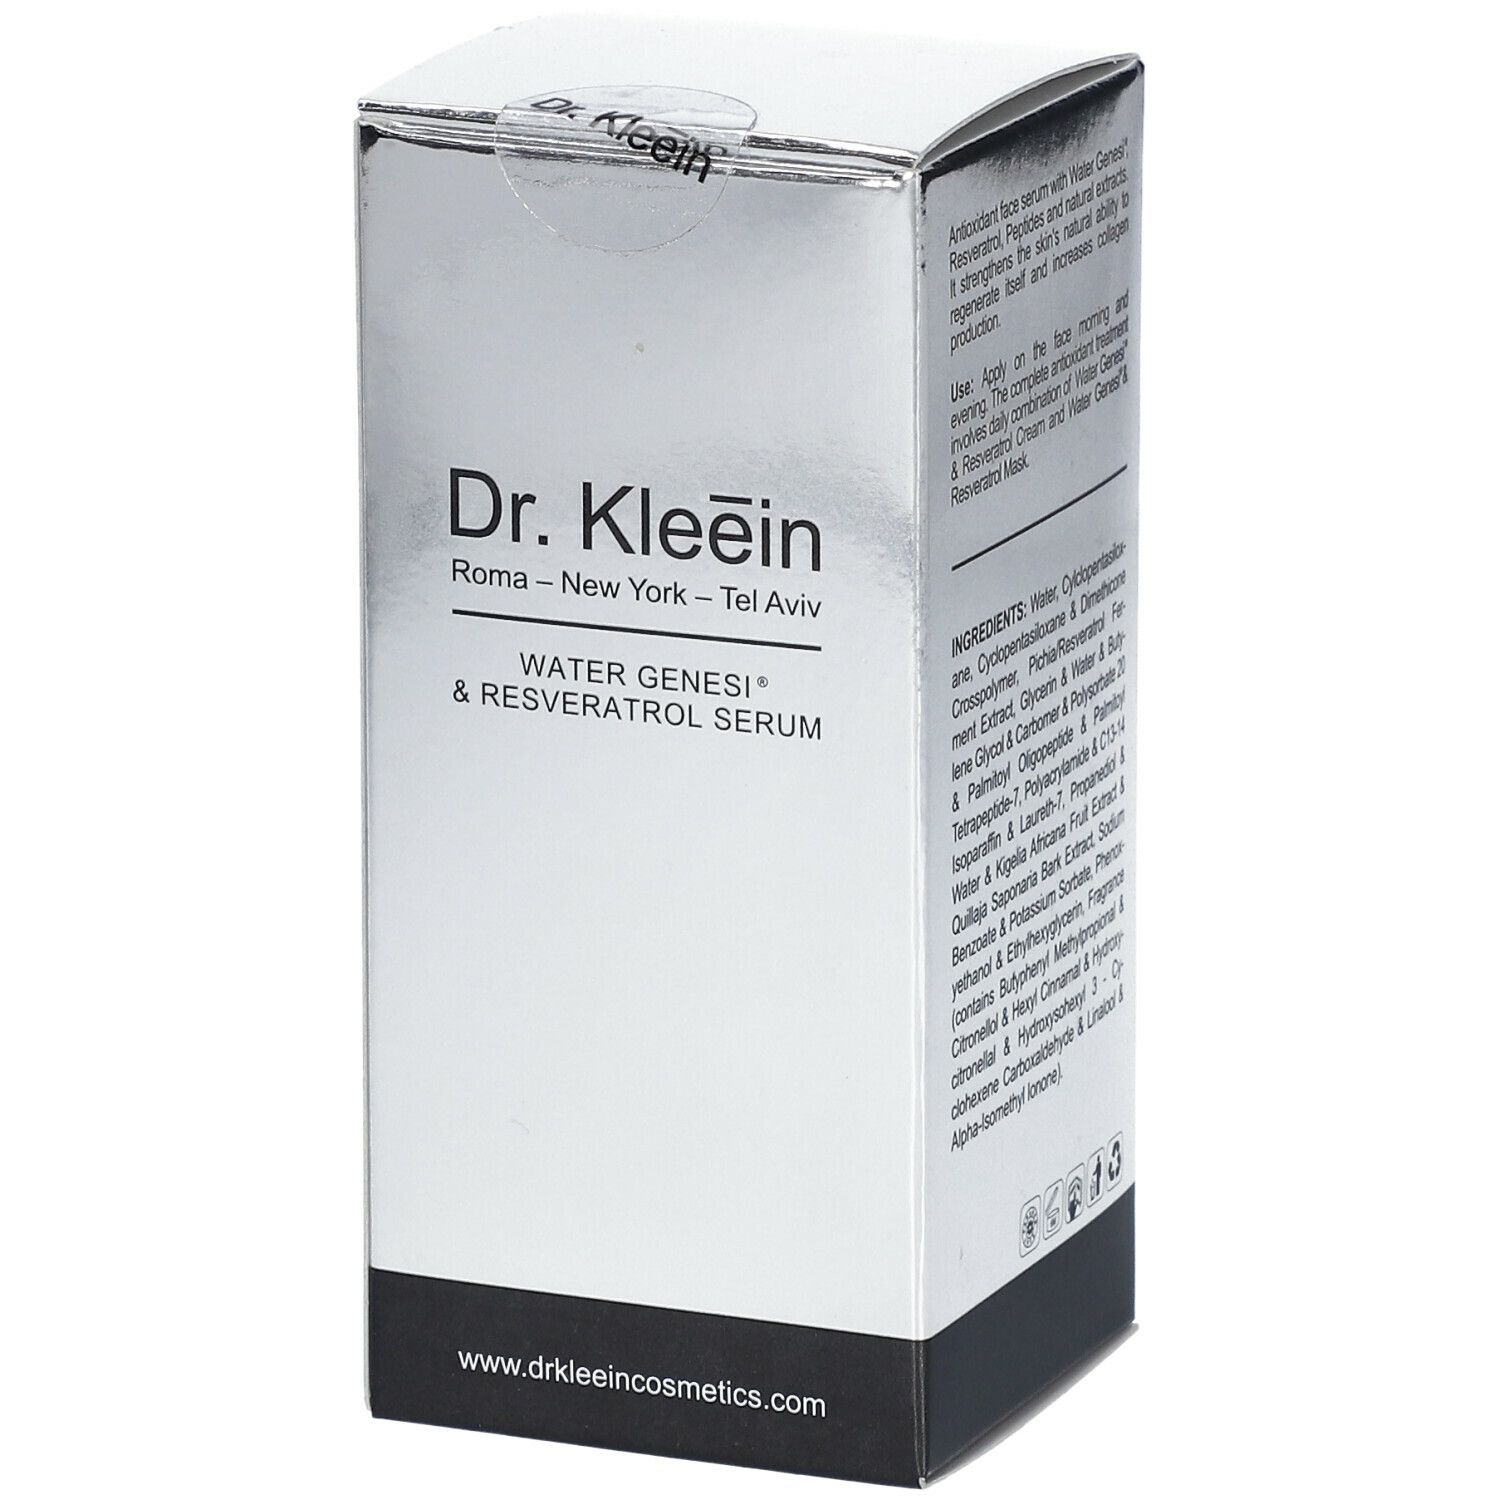 Image of Dr. Kleein WATER GENESI® & RESVERATOL SERUM